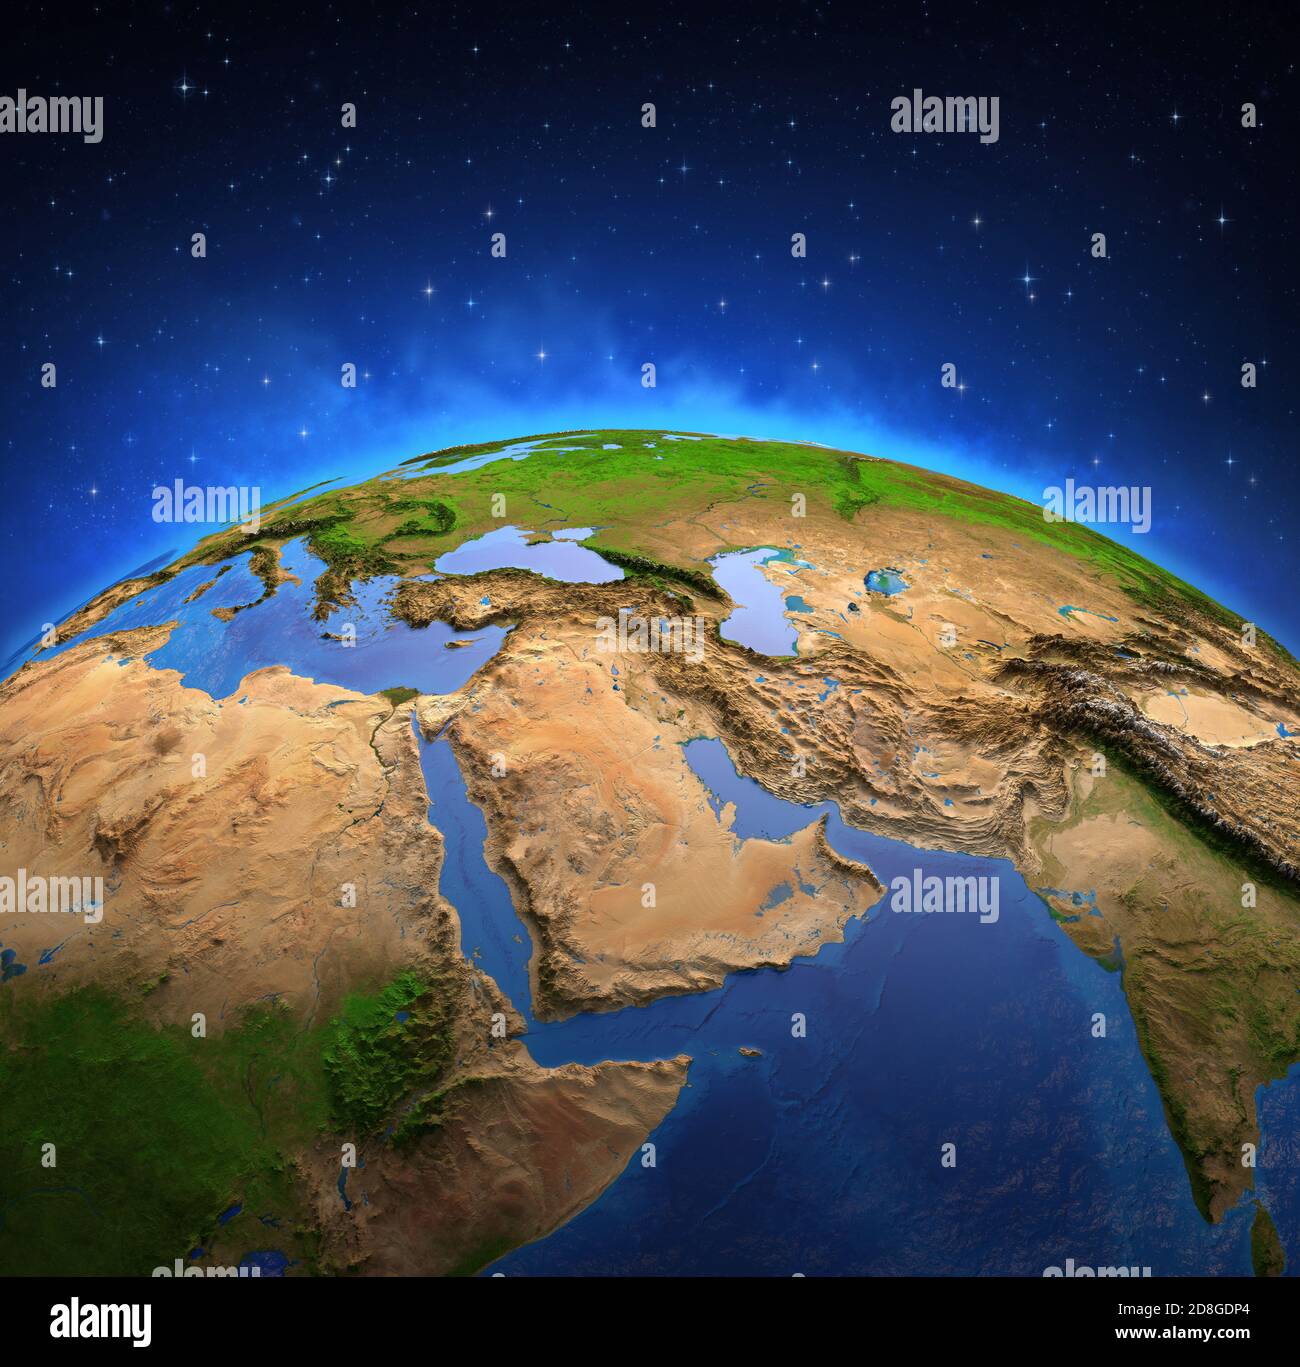 Oberfläche des Planeten Erde von einem Satelliten aus betrachtet, fokussiert auf den Nahen Osten. Physische Karte des Persischen Golfs. Von der NASA eingerichtete Elemente Stockfoto